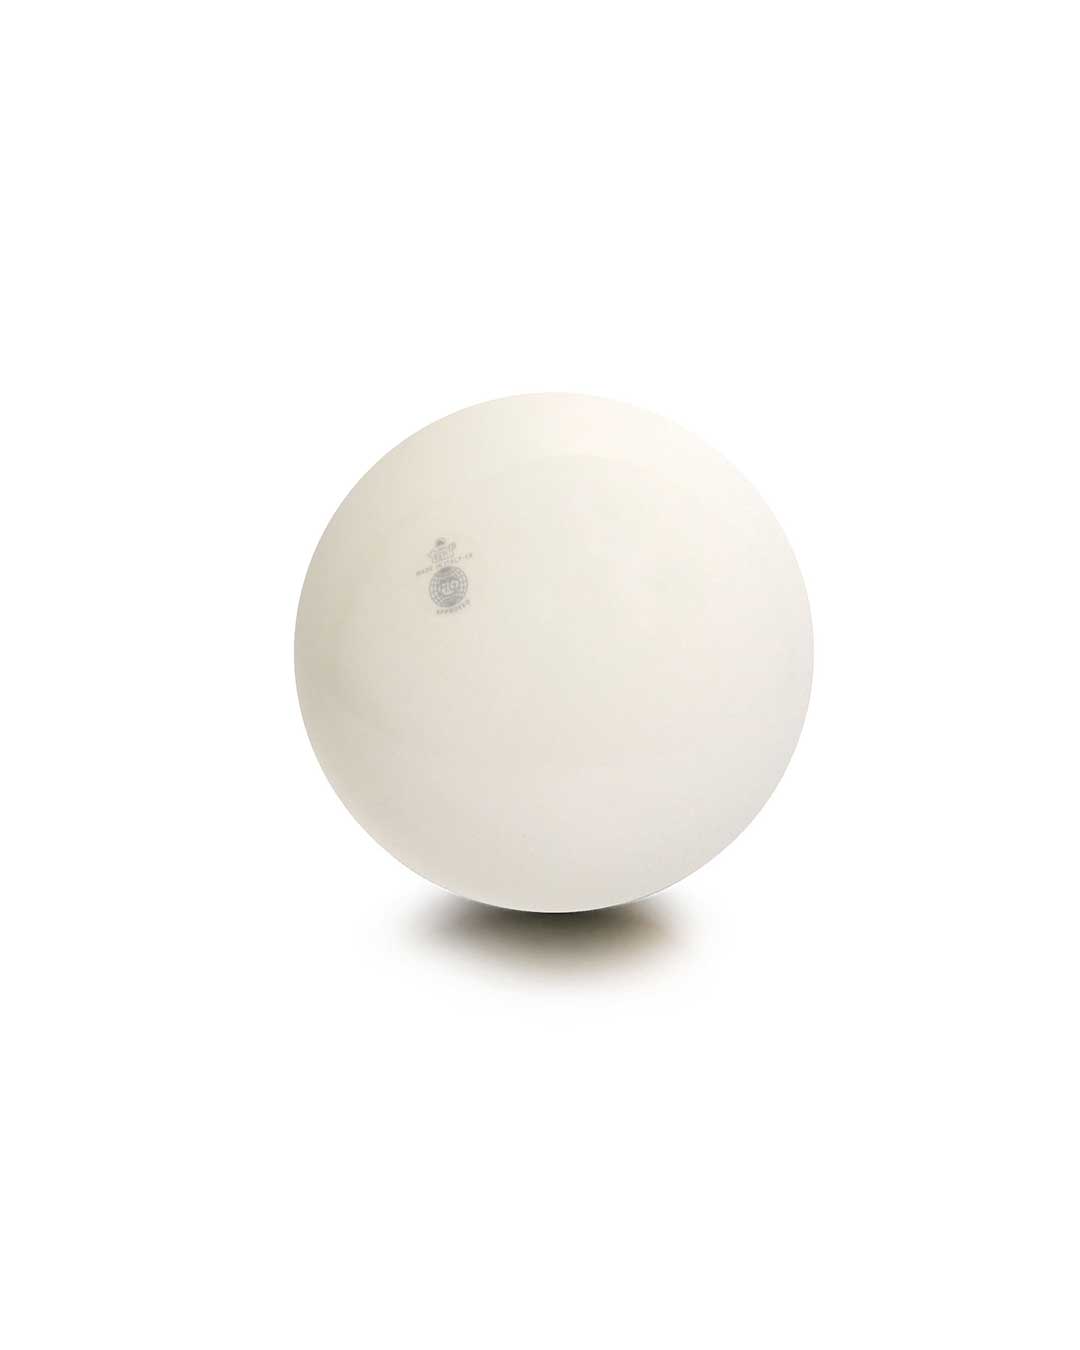 Balón liso de gimnasia rítmica TRIAL 42 blanco 